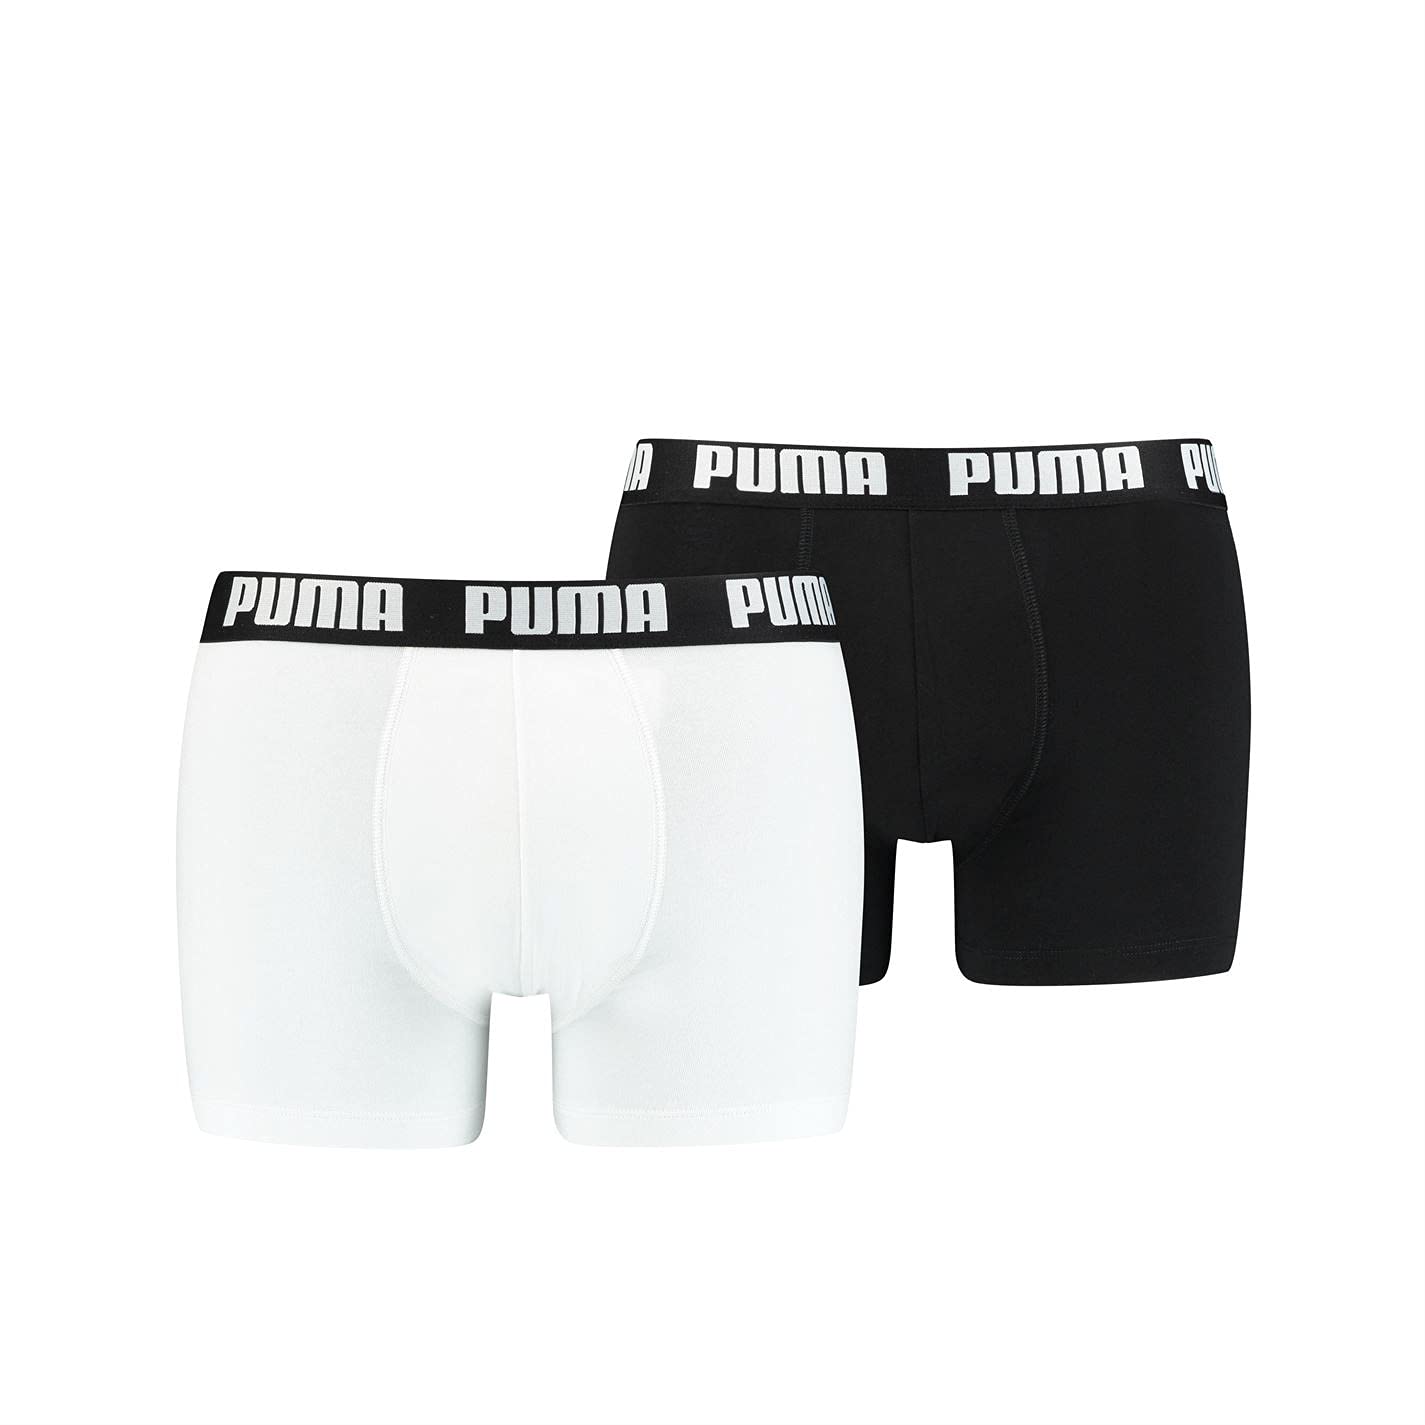 PUMA Herren Boxer Short Boxershort 2er Pack Größe S - XXL White/Black NEU, Größe:S